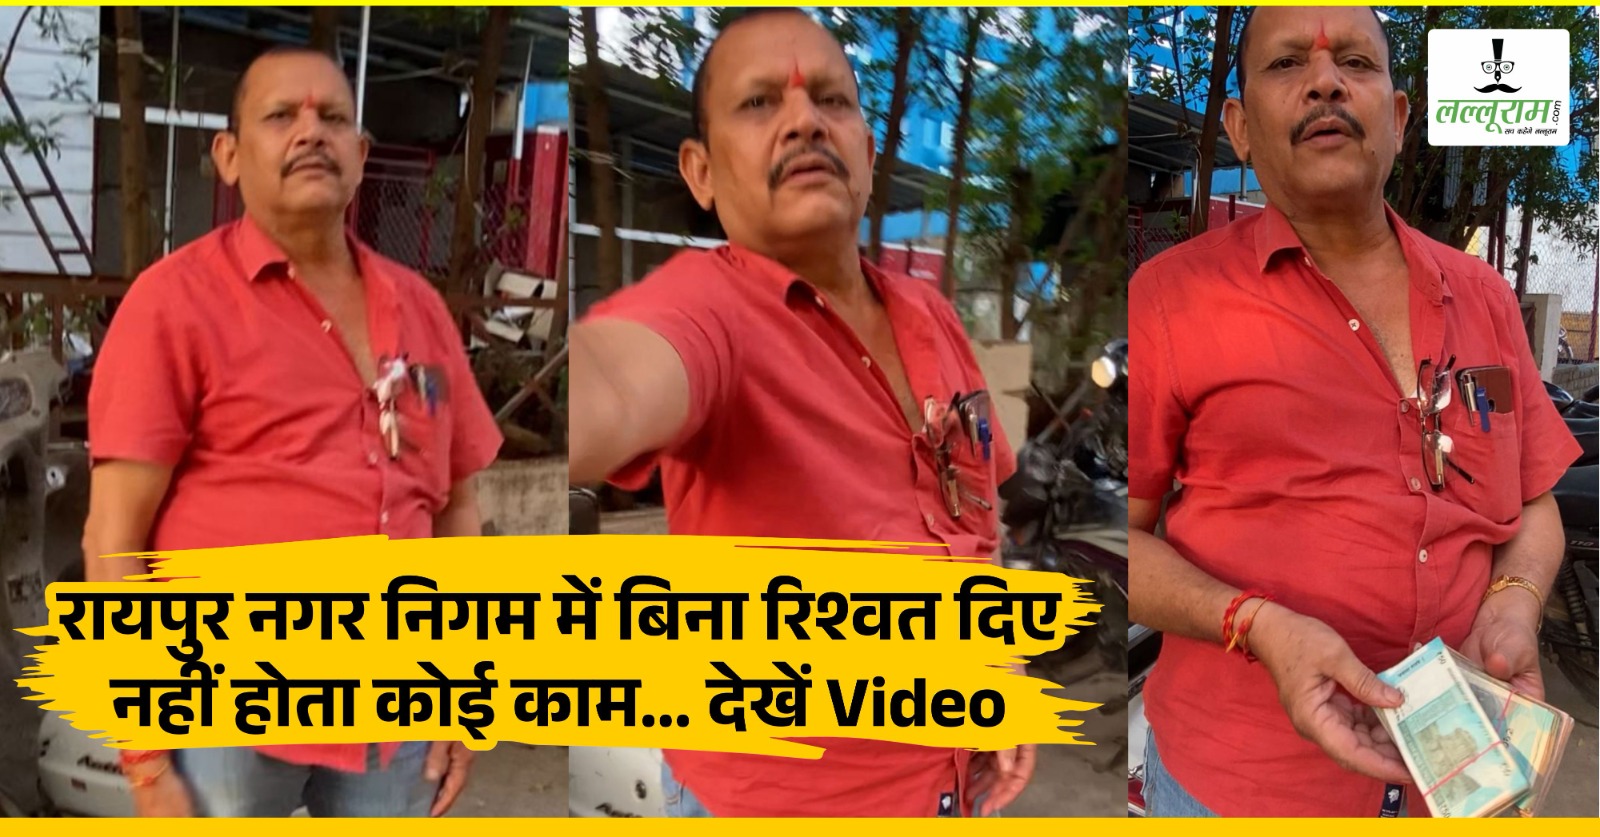 रायपुर नगर निगम में बिना रिश्वत दिए नहीं होता कोई काम… देखें Video, रिश्वत लेने के बाद कैसे दिखाई ईमानदारी